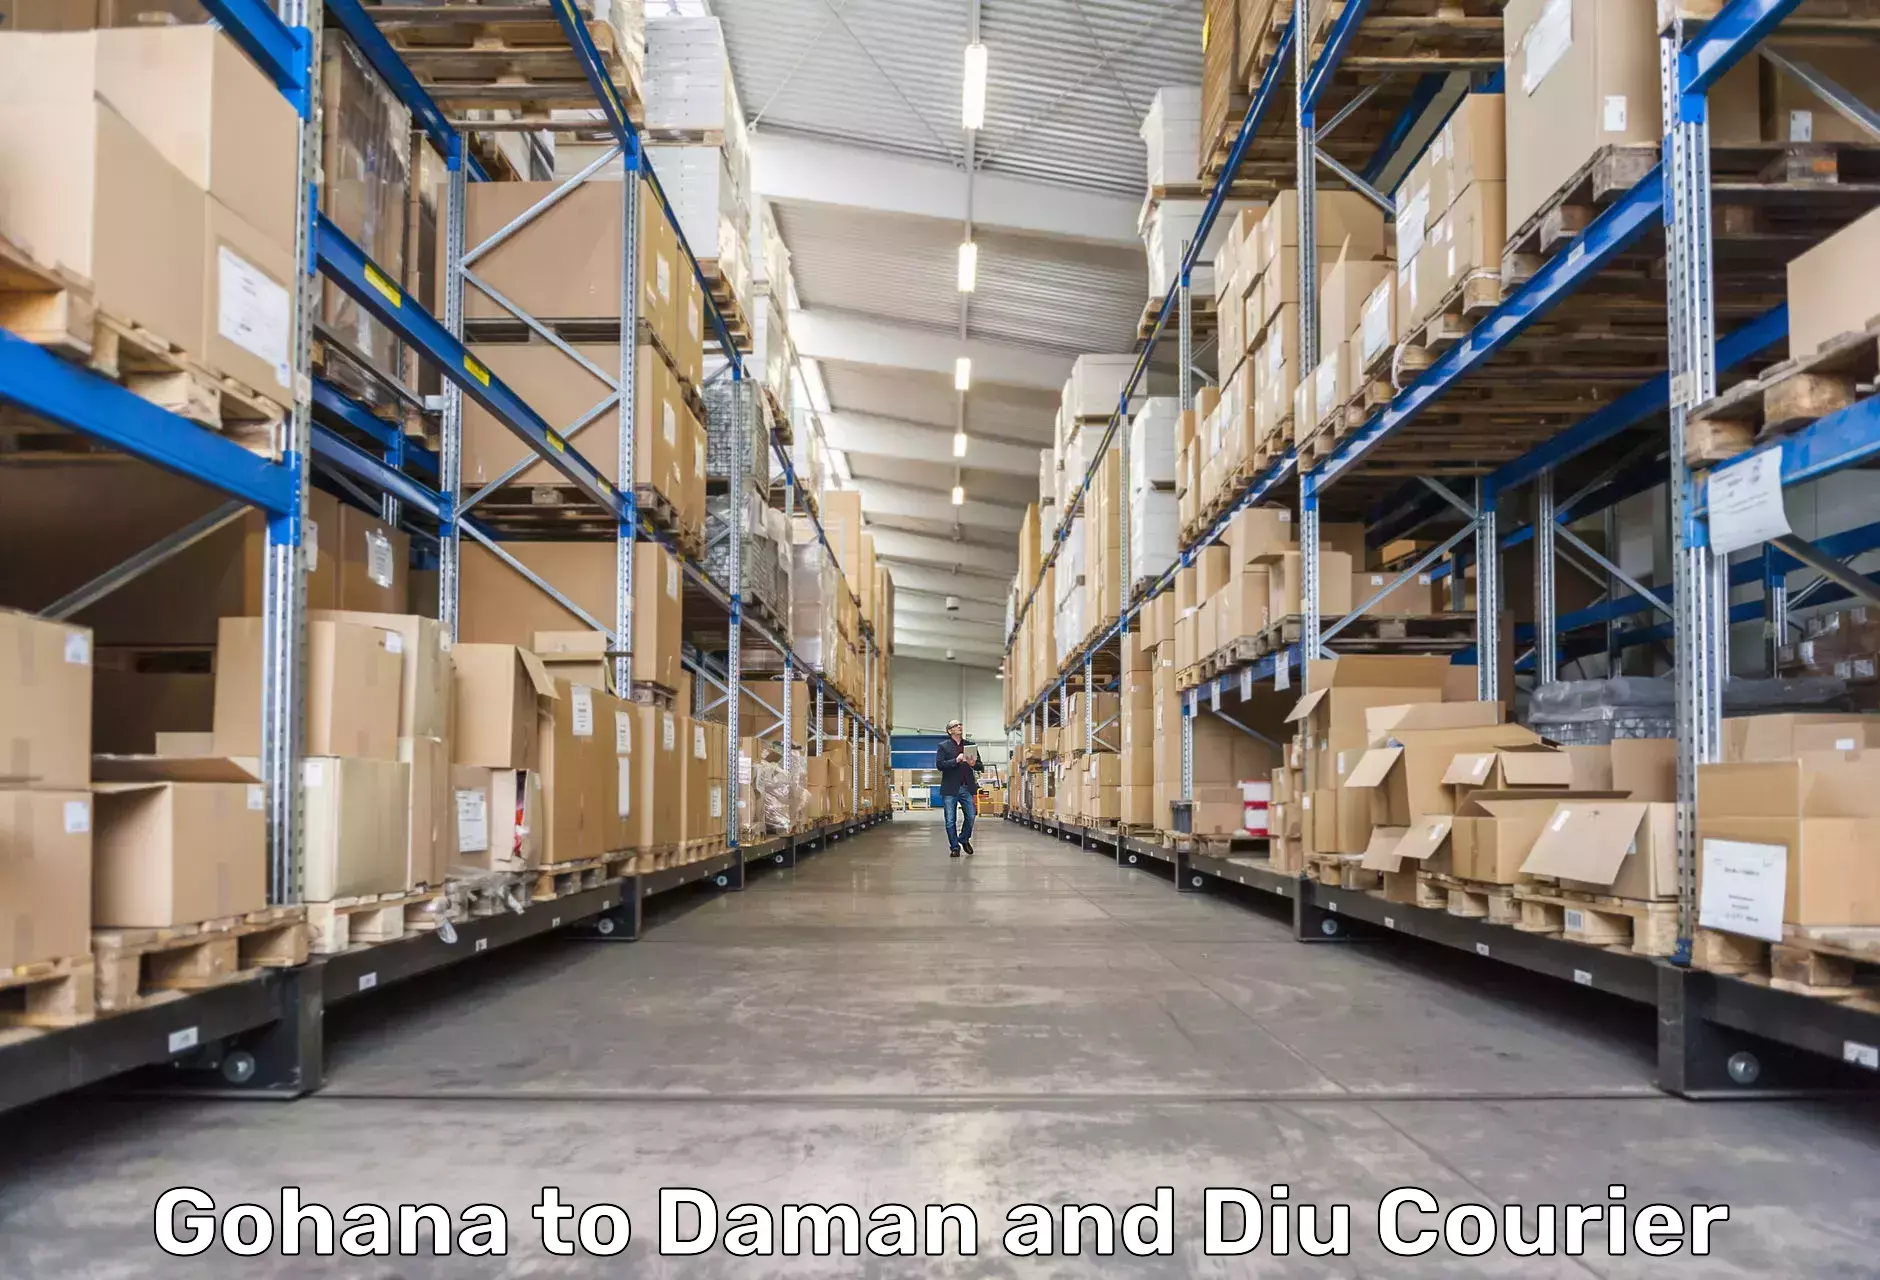 Customer-centric shipping Gohana to Diu